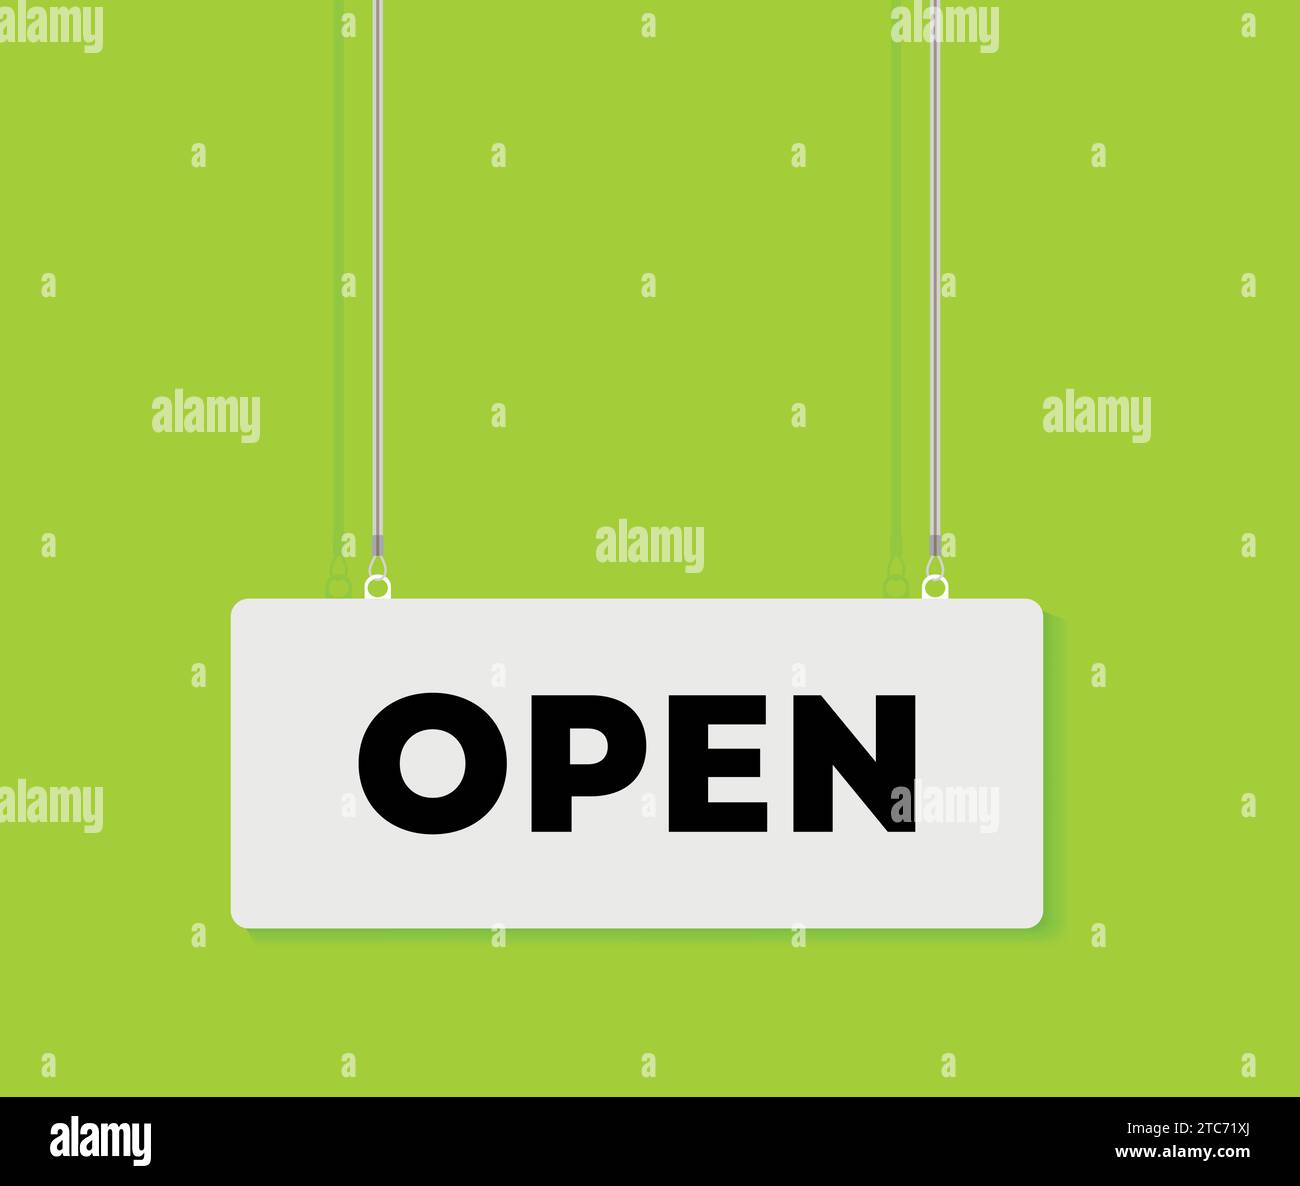 Illustrazione vettoriale dell'apertura di un cartello appeso su uno sfondo colorato verde limone. Illustrazione Vettoriale